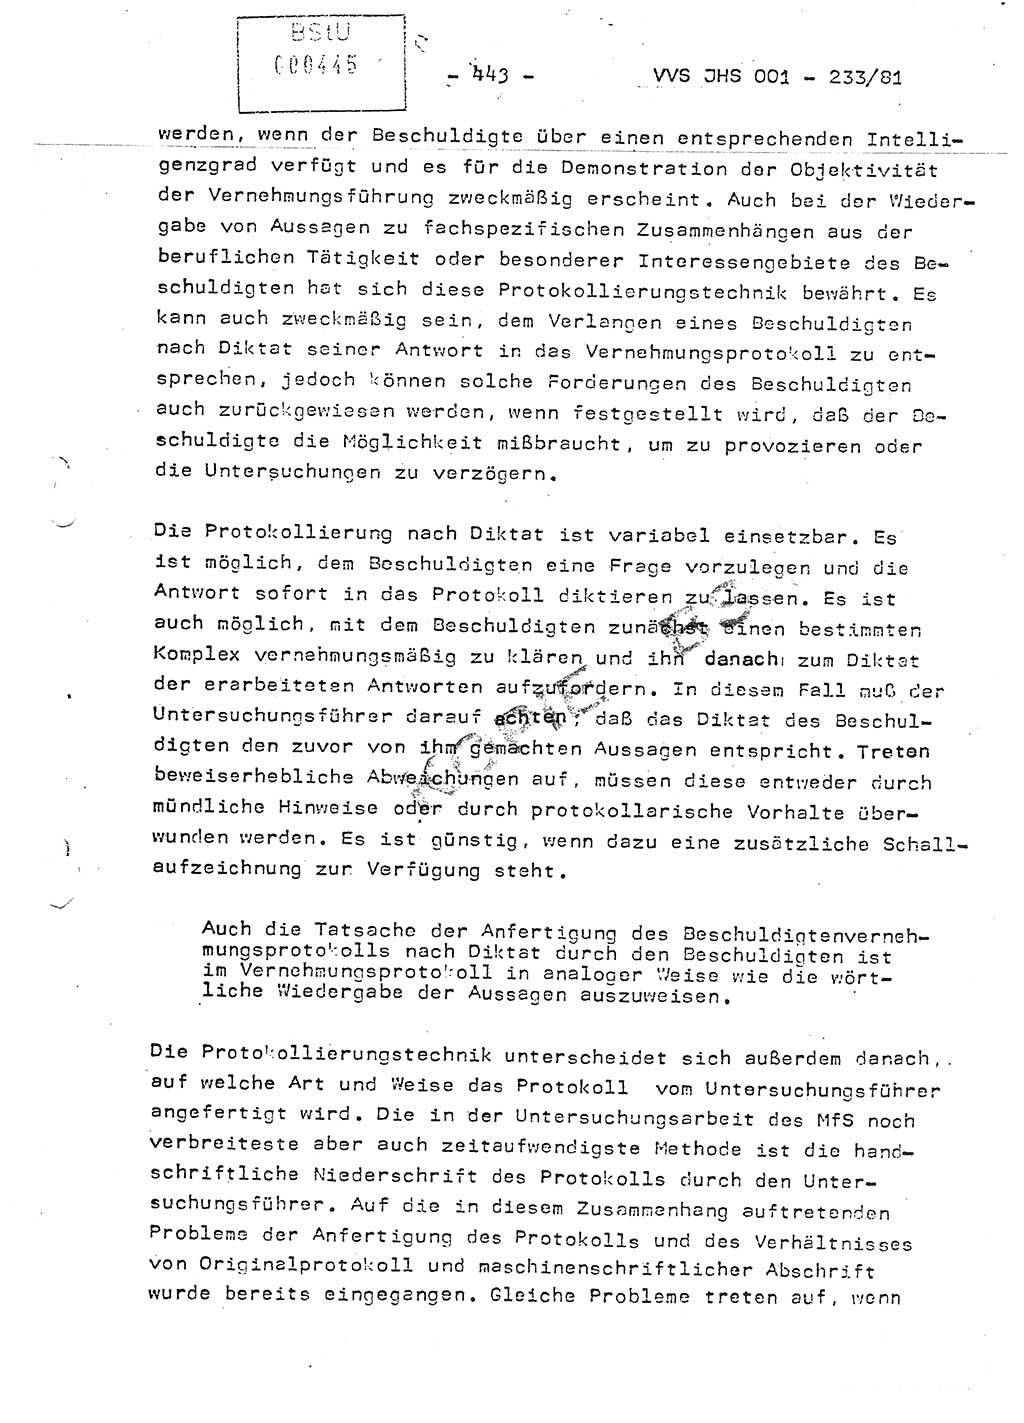 Dissertation Oberstleutnant Horst Zank (JHS), Oberstleutnant Dr. Karl-Heinz Knoblauch (JHS), Oberstleutnant Gustav-Adolf Kowalewski (HA Ⅸ), Oberstleutnant Wolfgang Plötner (HA Ⅸ), Ministerium für Staatssicherheit (MfS) [Deutsche Demokratische Republik (DDR)], Juristische Hochschule (JHS), Vertrauliche Verschlußsache (VVS) o001-233/81, Potsdam 1981, Blatt 443 (Diss. MfS DDR JHS VVS o001-233/81 1981, Bl. 443)